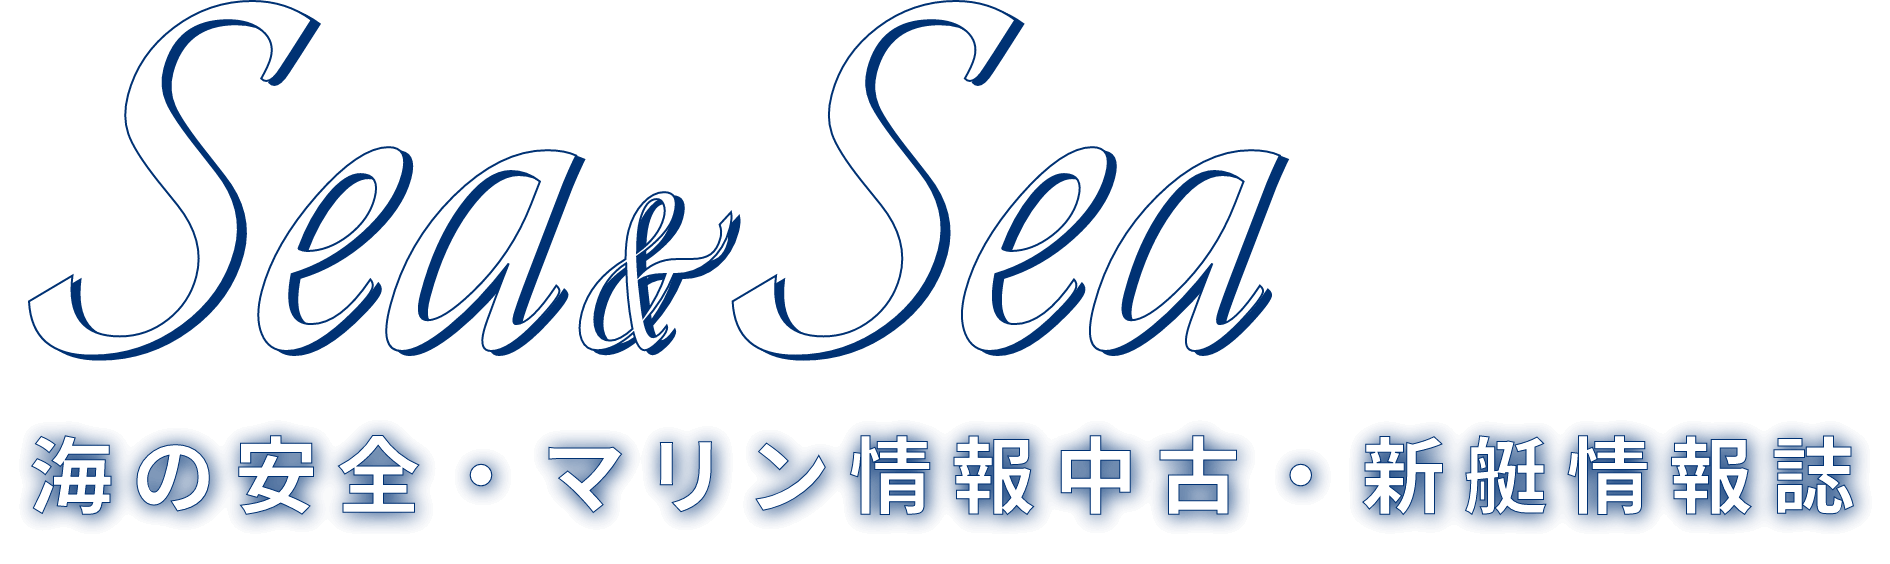 海の安全・マリン情報中古・新艇情報誌 Sea＆Sea